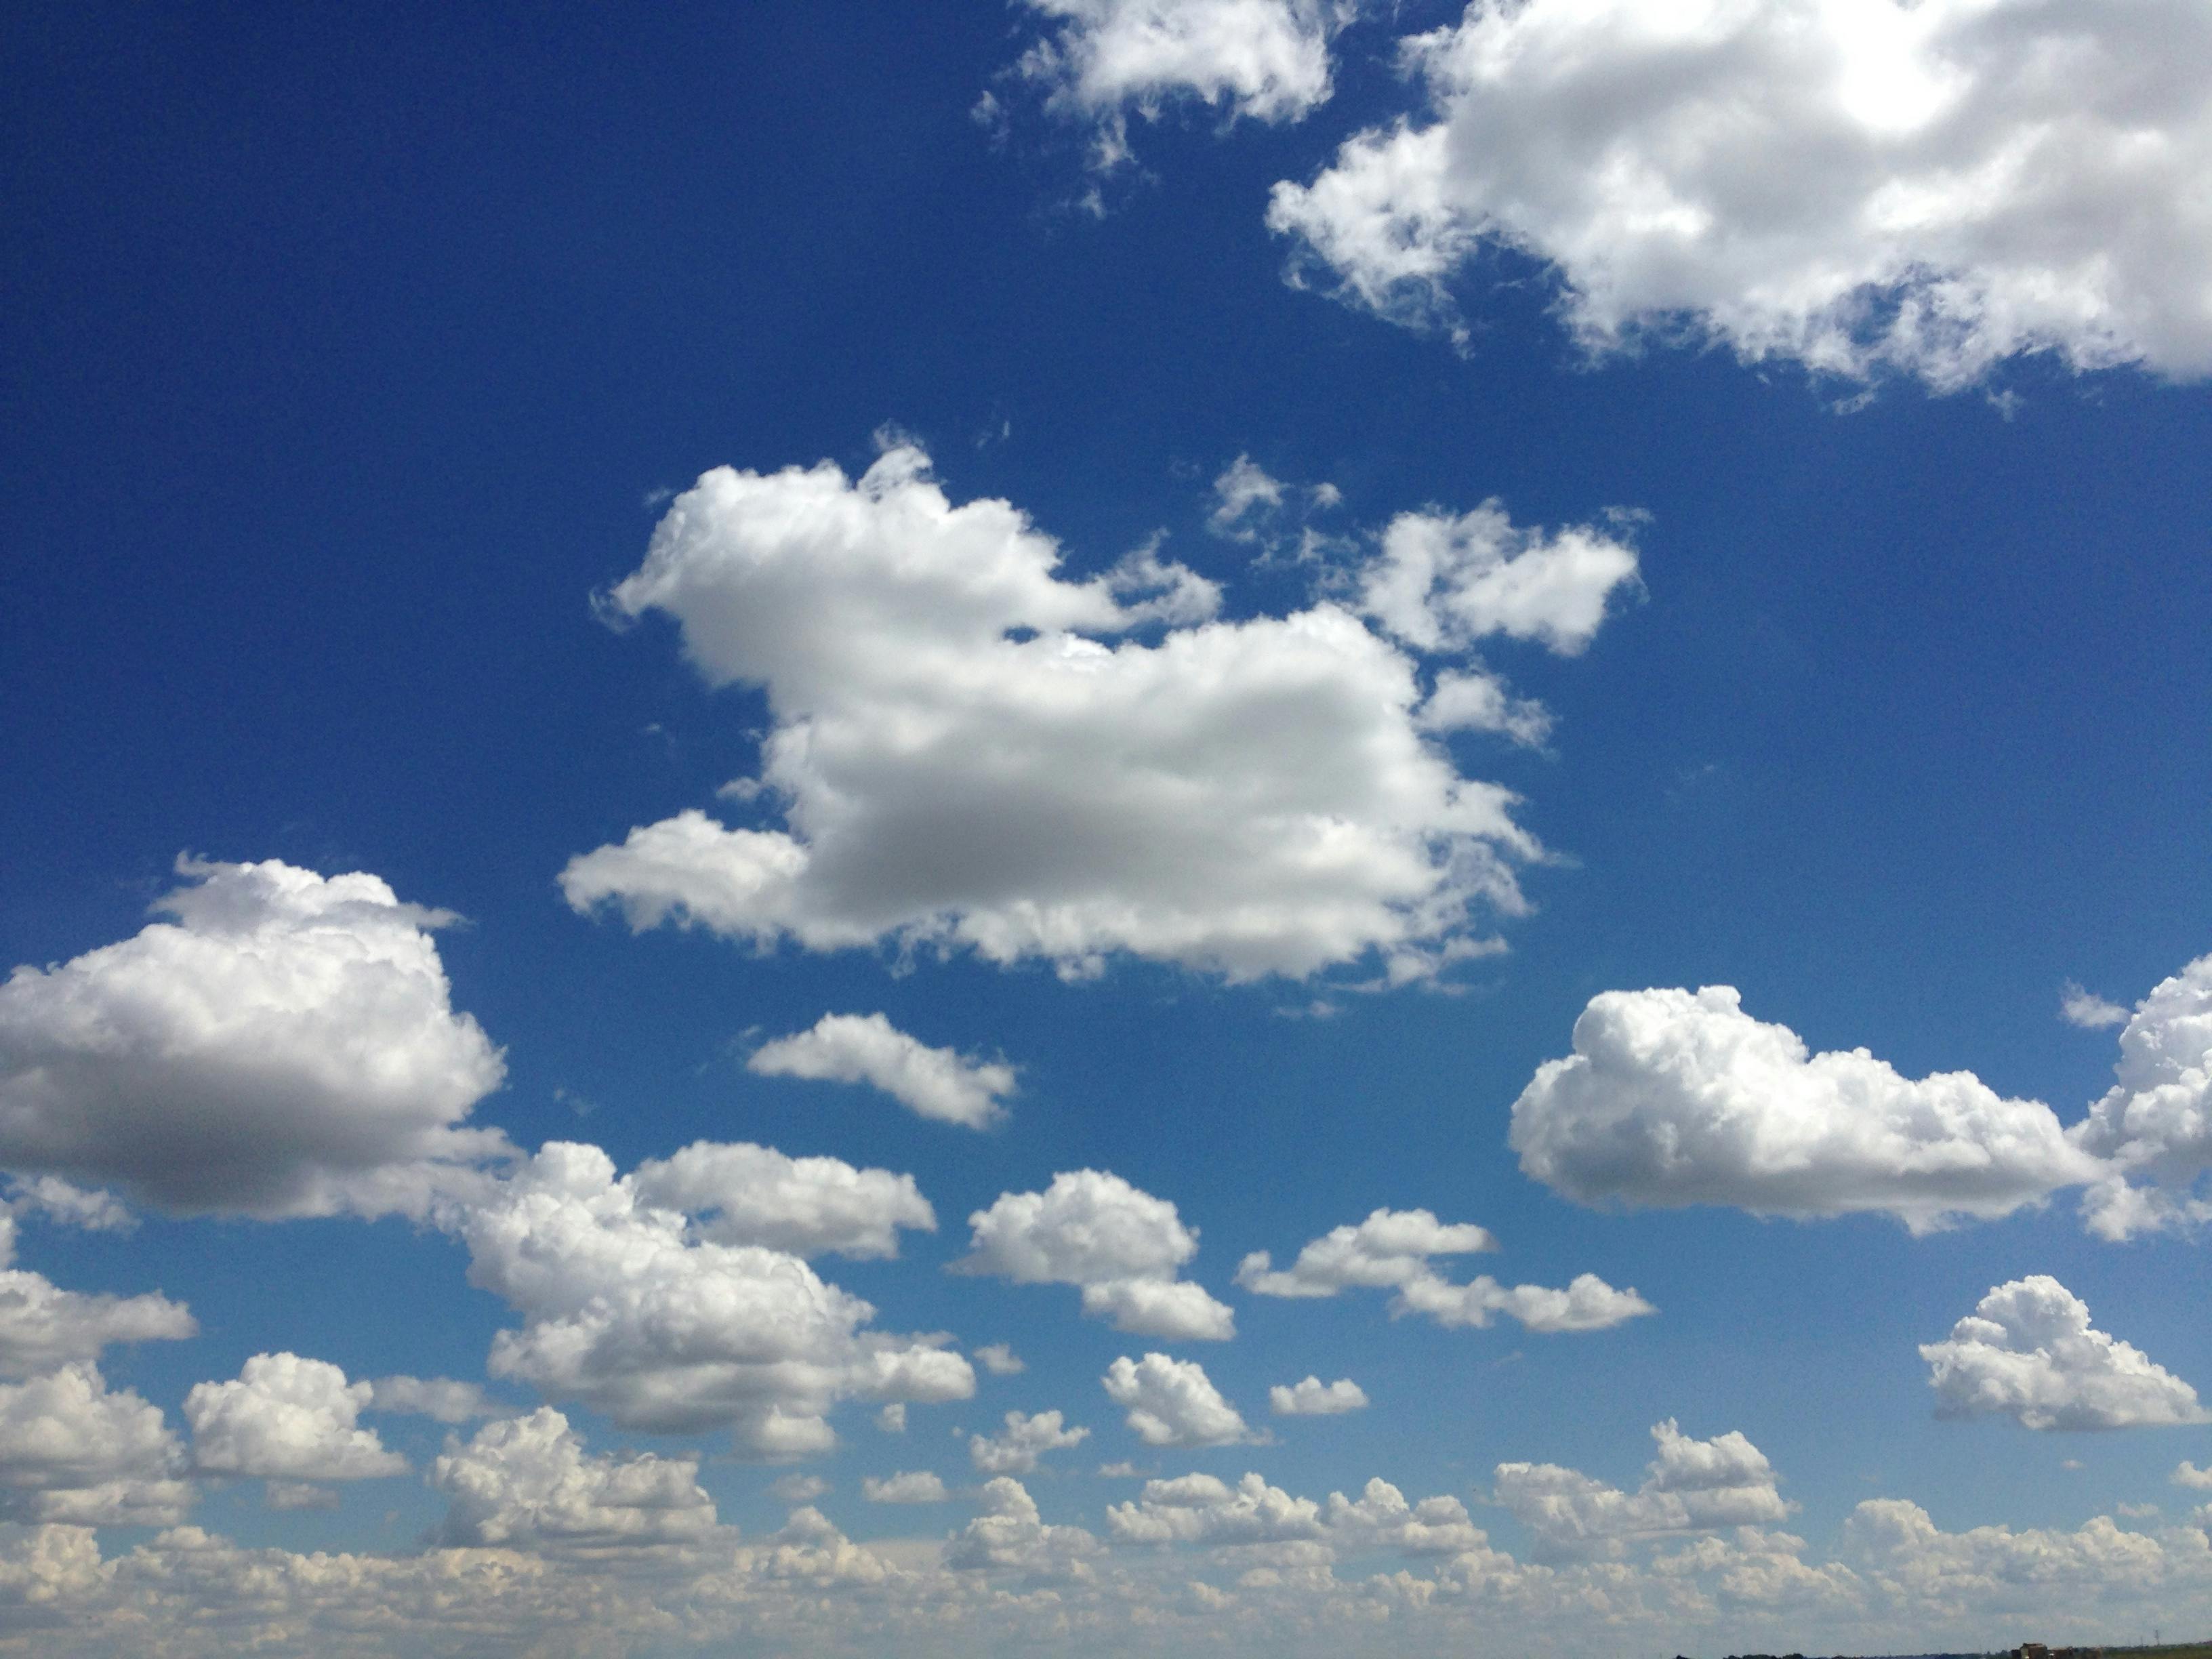 Kostenloses Foto zum Thema: blauer himmel, wolken